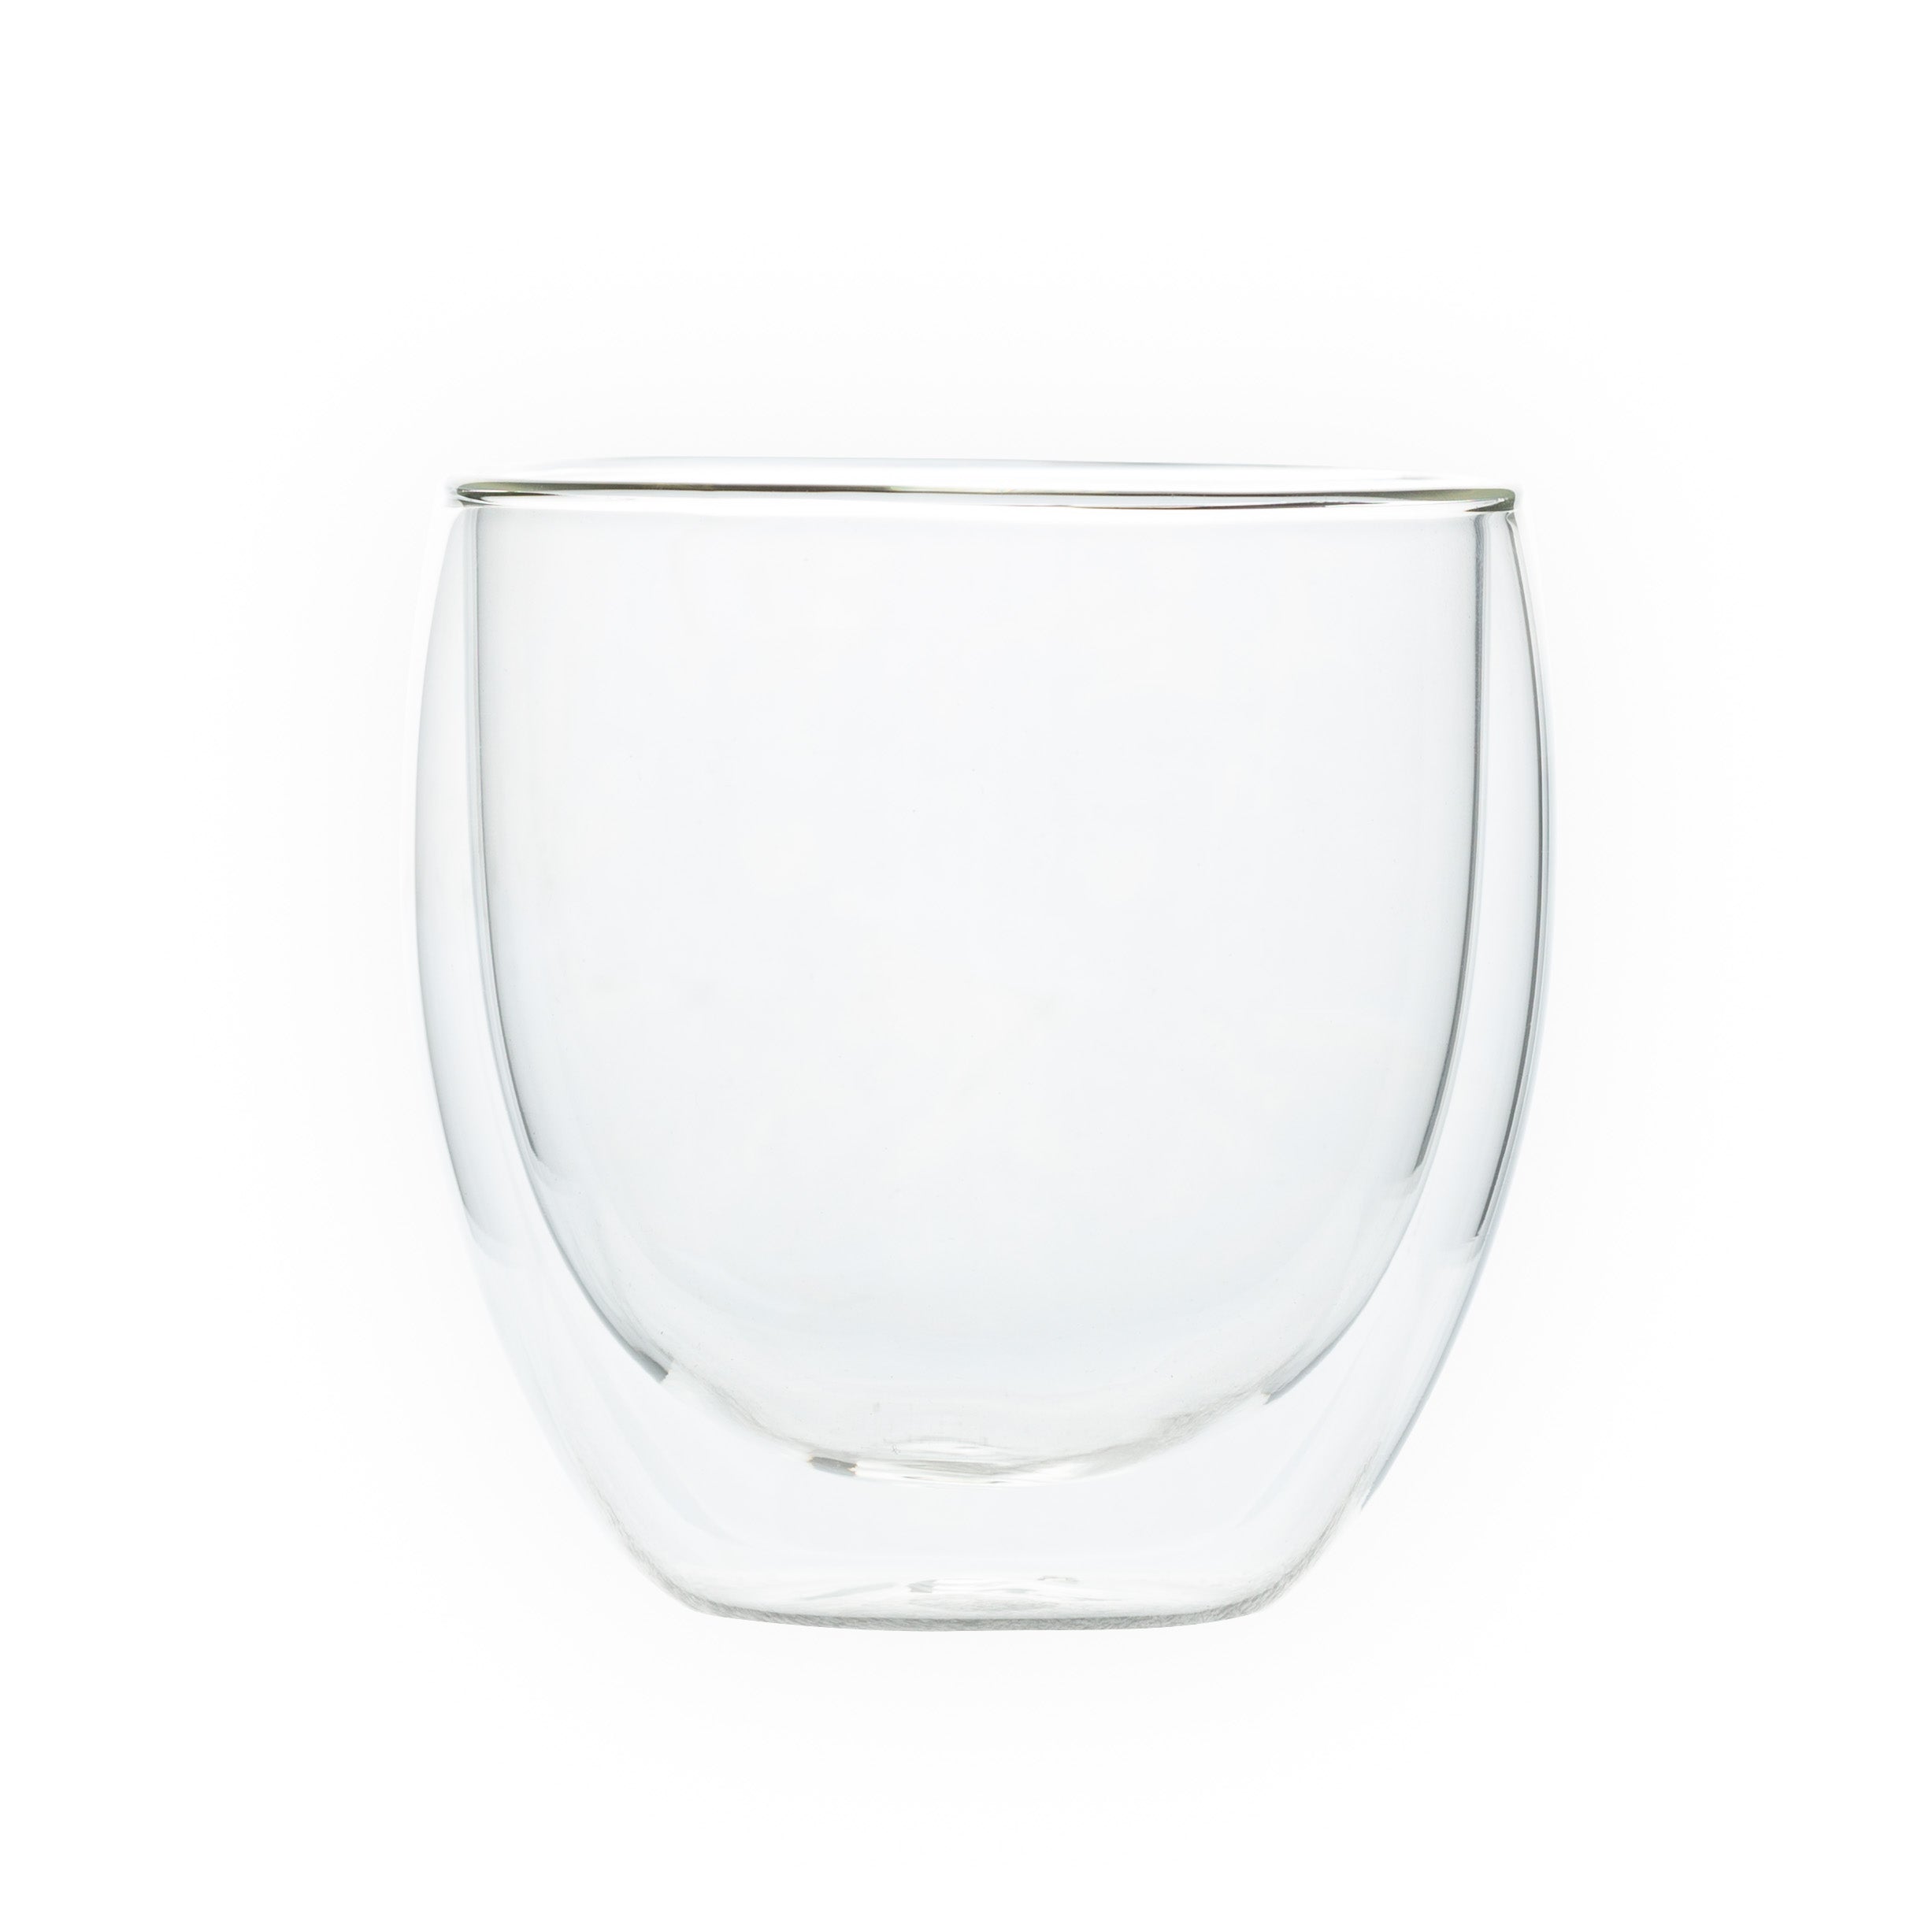 Set vasos de cristal doble pared 250 ml